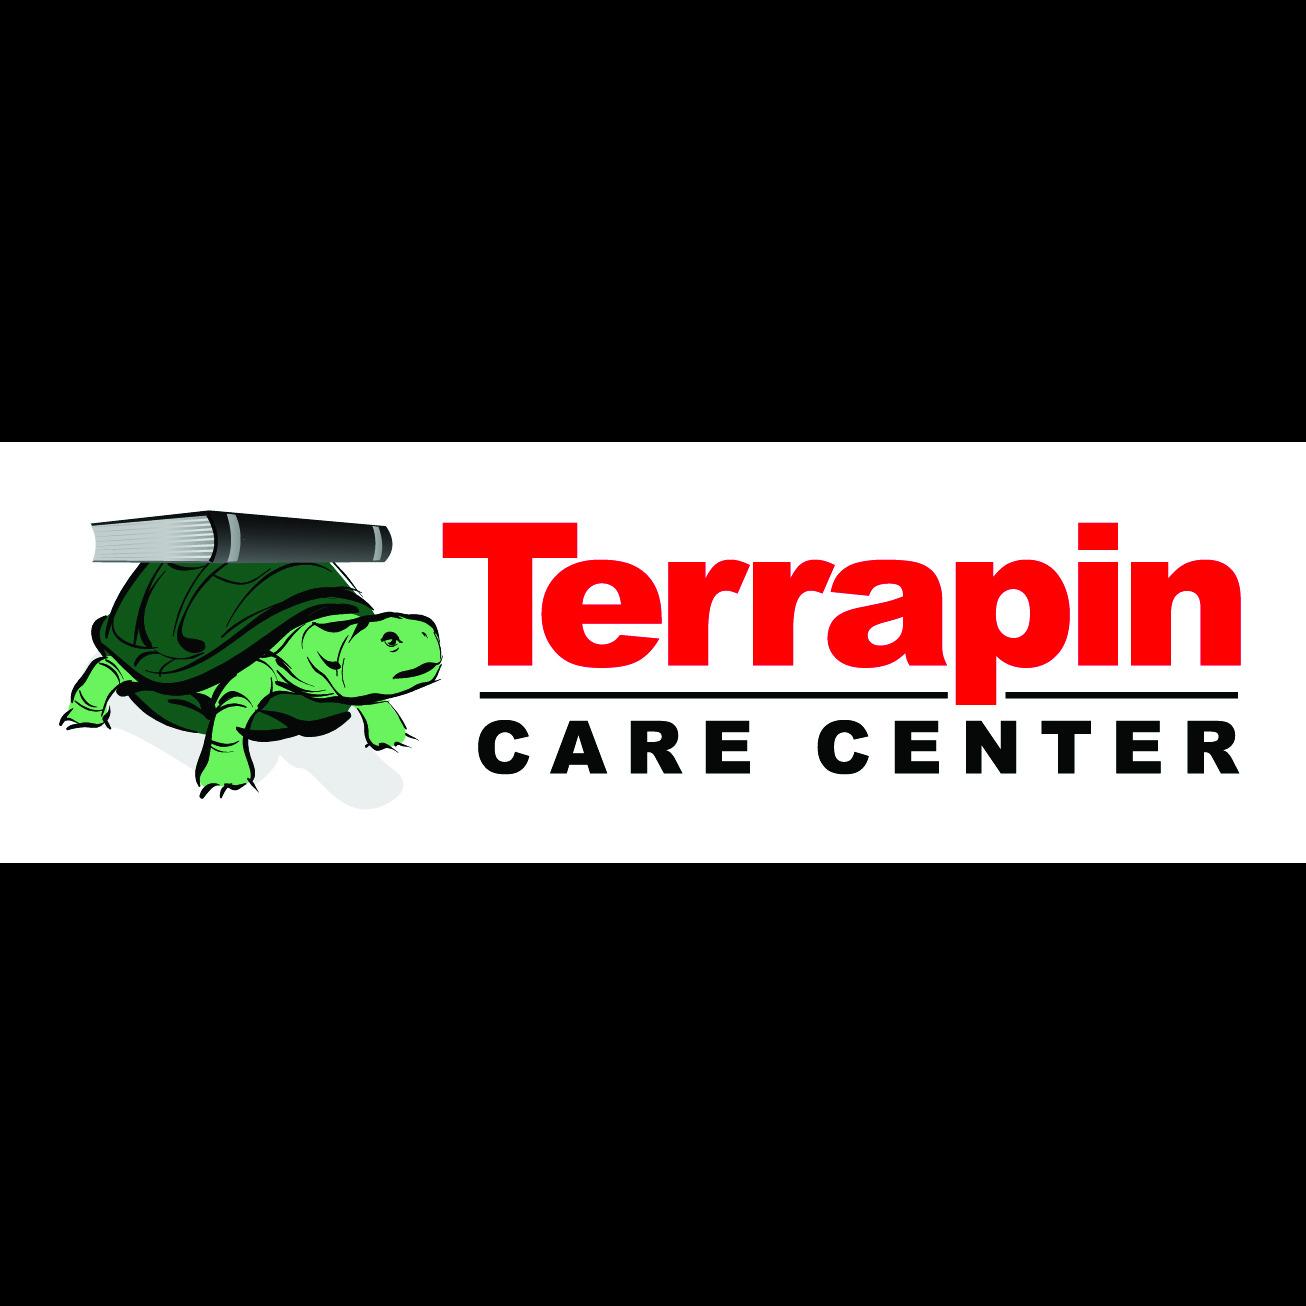 Terrapin Care Center Logo